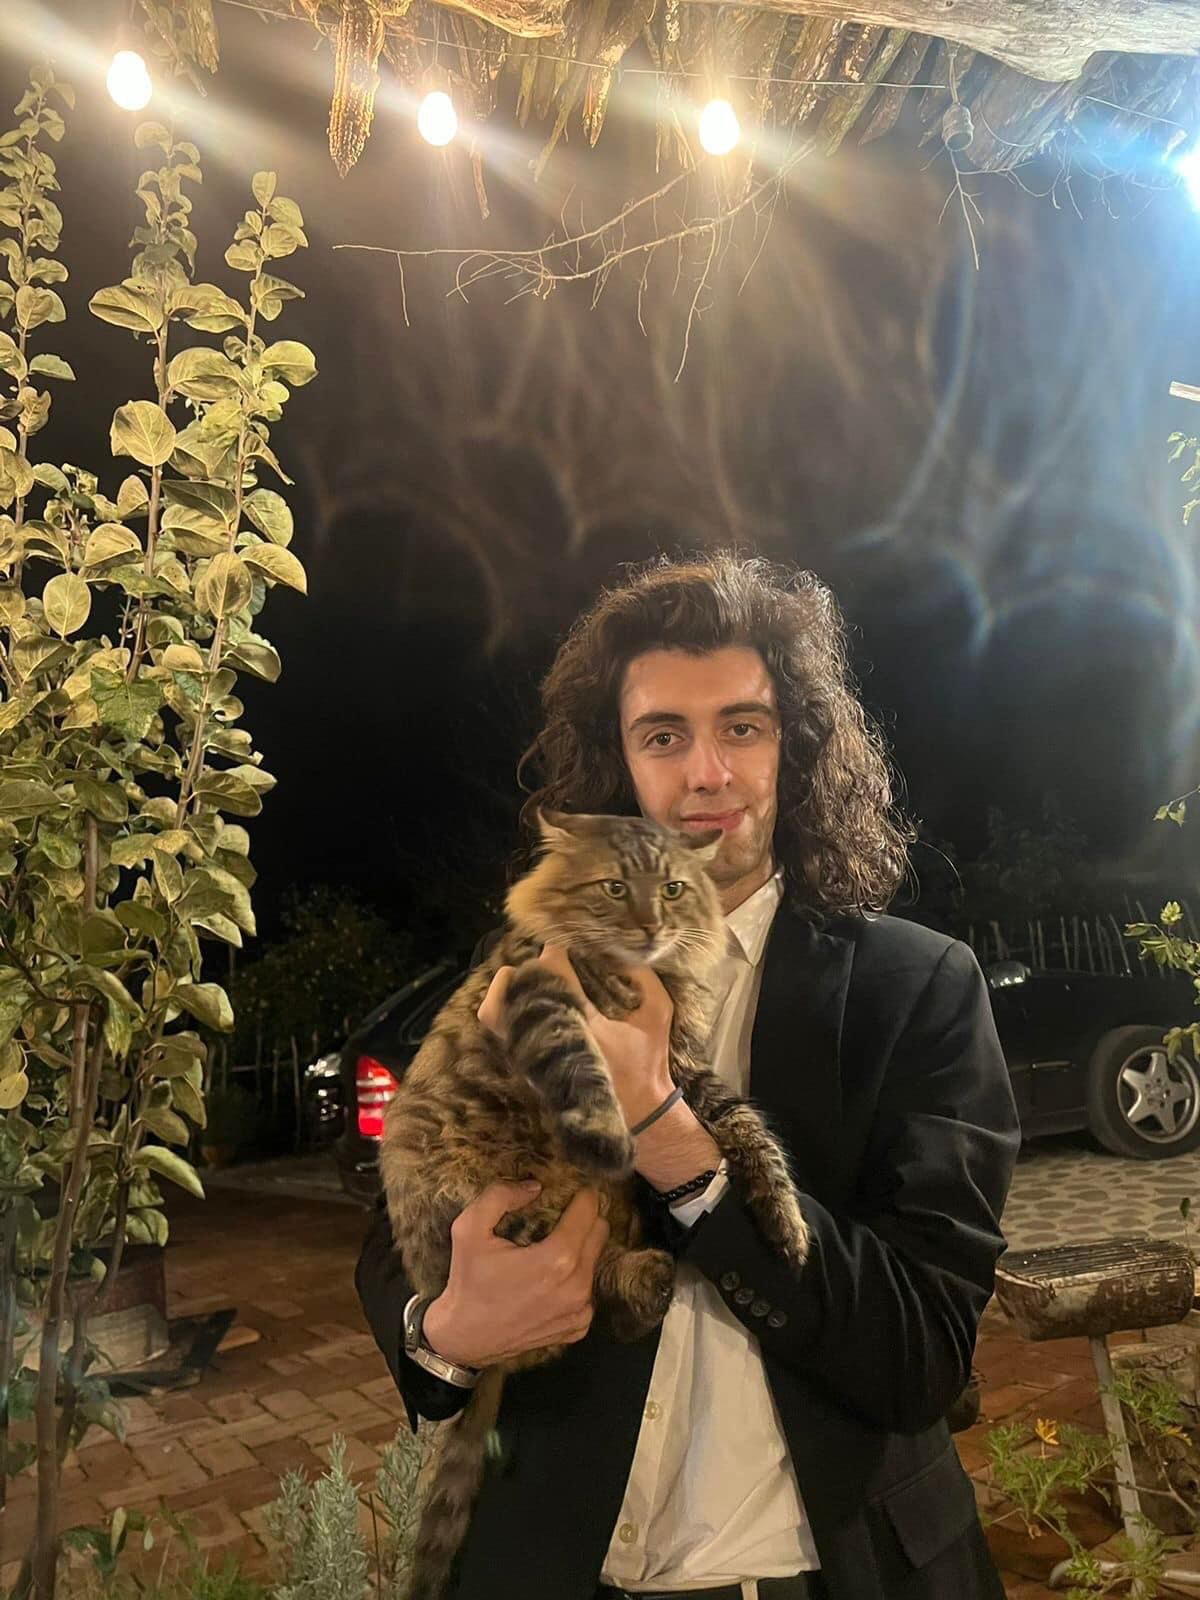 Luçiano Bardhi  dhe dashuria  per  macet ( foto personale)